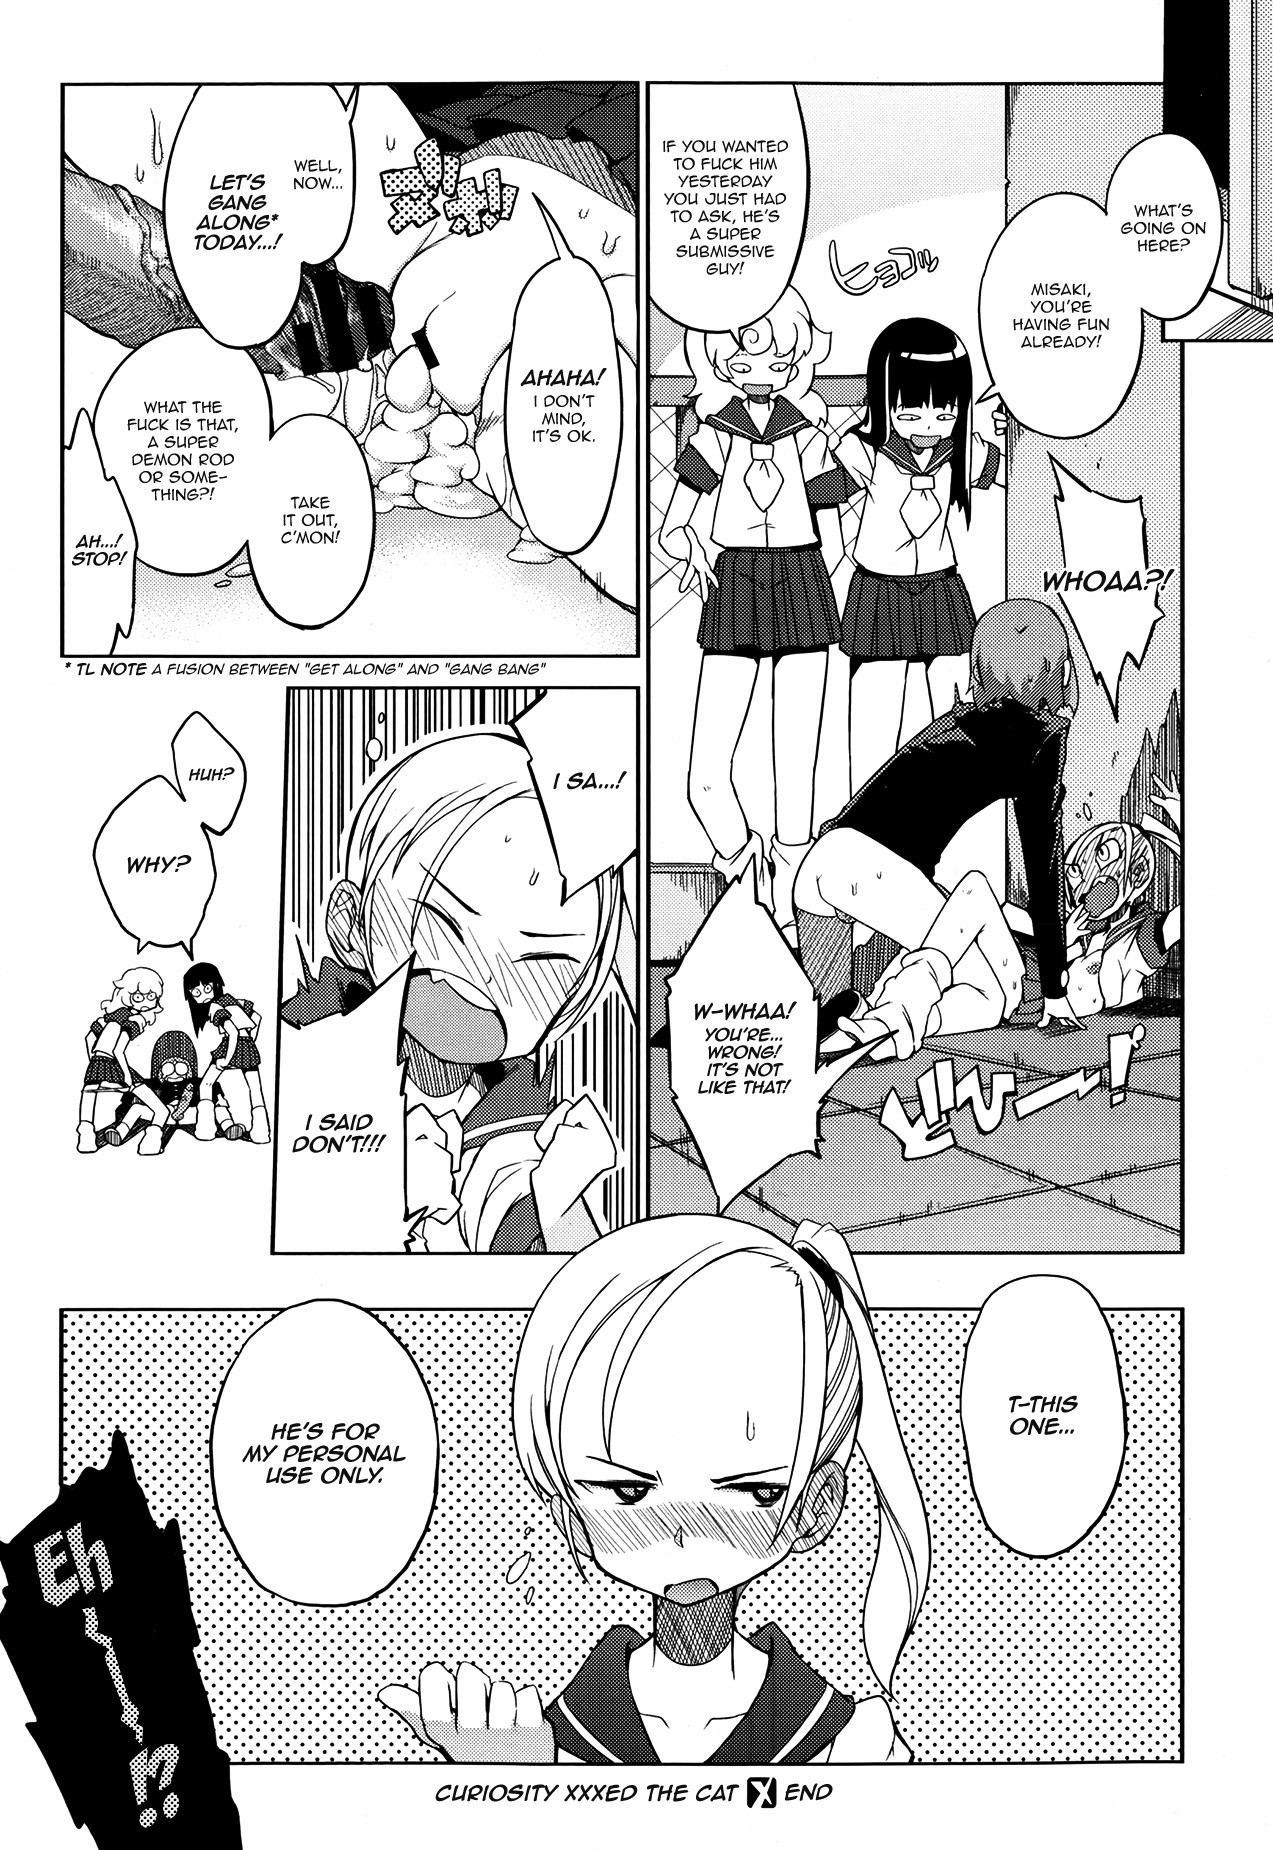 [F4U] Curiosity xxxed the cat + Outro (Original) [English] =BoggyB + maipantsu + Ero Manga Girls= page 24 full